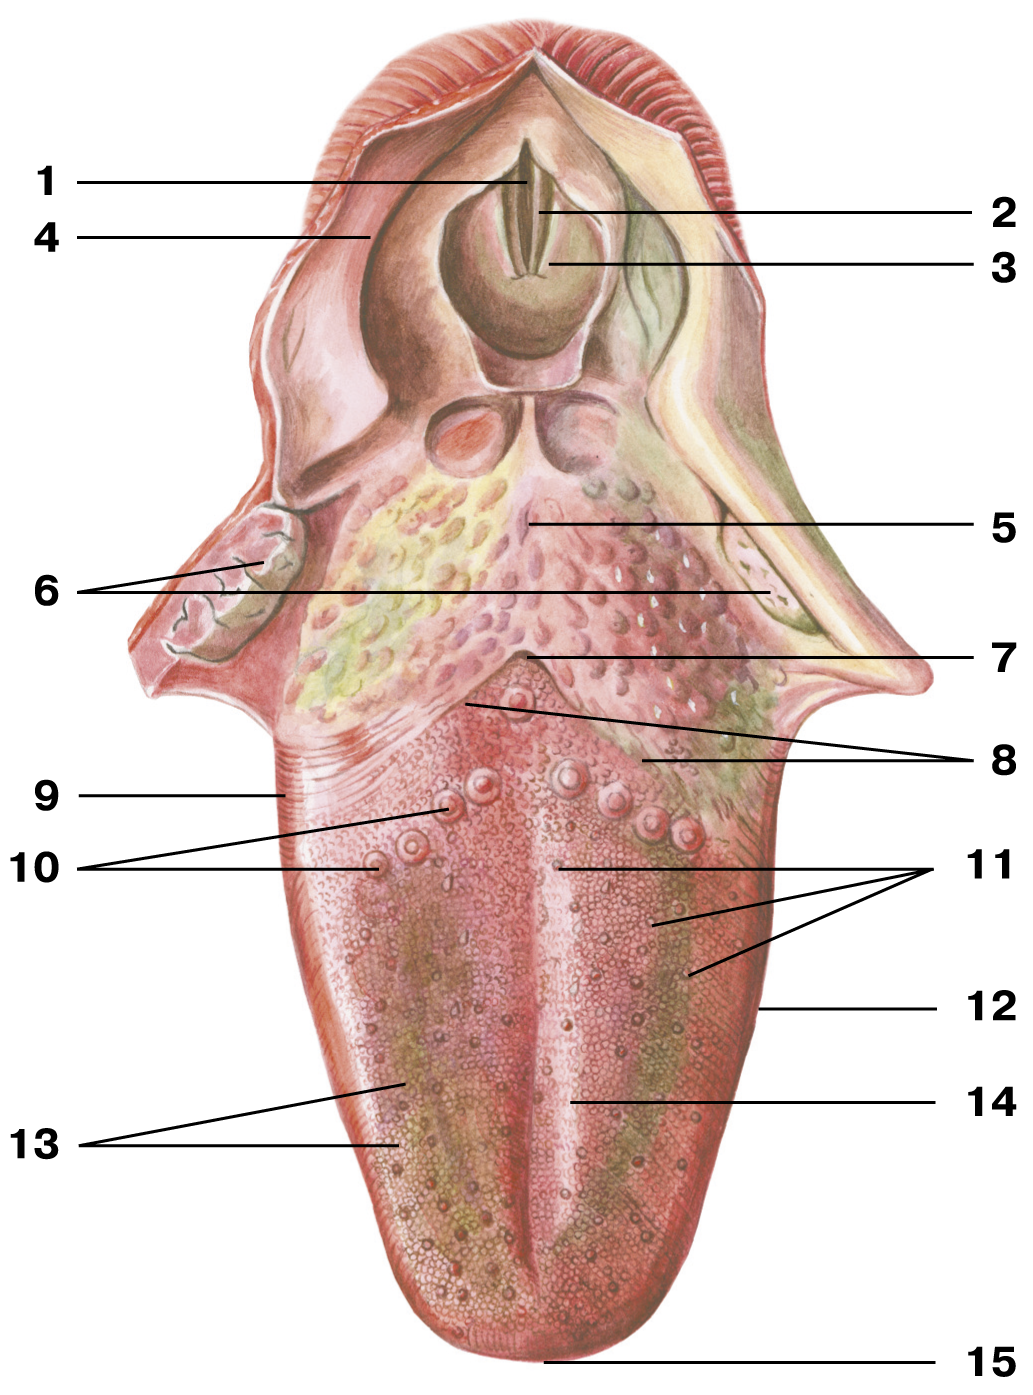 Нижняя часть рта. Желобовидные сосочки корня языка. Язычная миндалина анатомия. Грибовидные сосочки языка анатомия. Черпалонадгортанная складка анатомия.